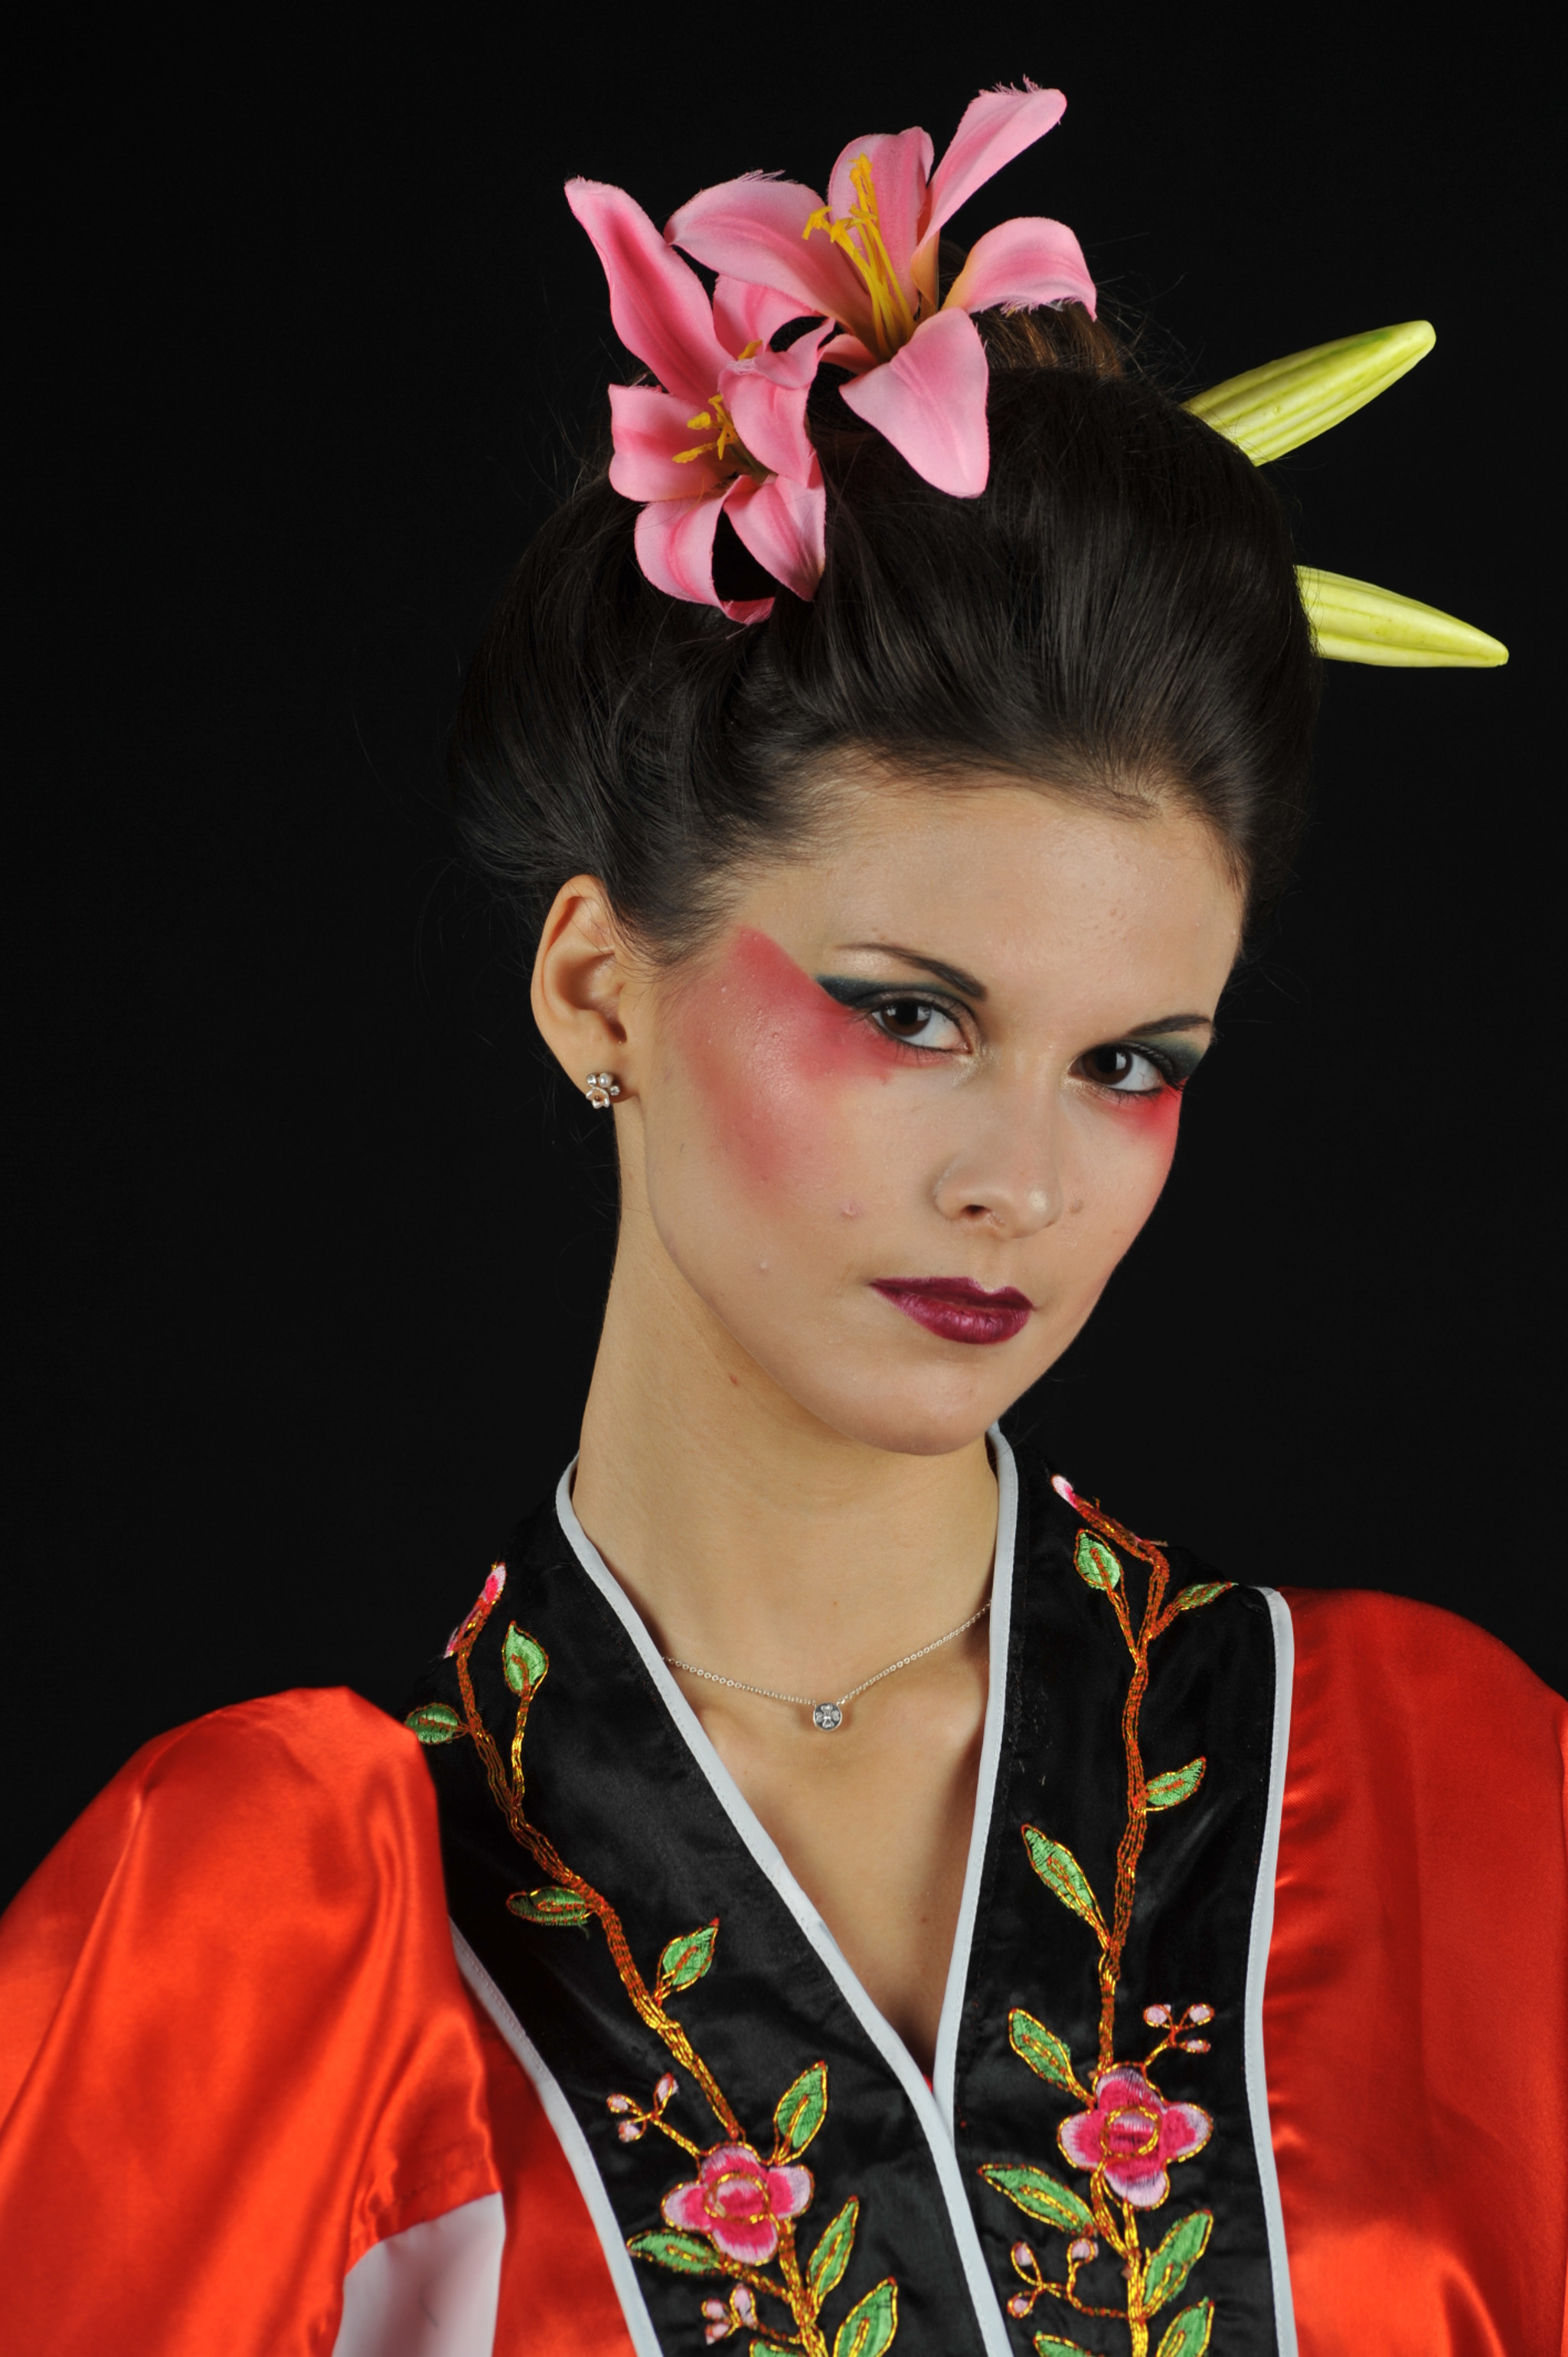 AF Zoom-Nikkor 70-300mm f/4-5.6D ED sample photo. Geisha mood photography